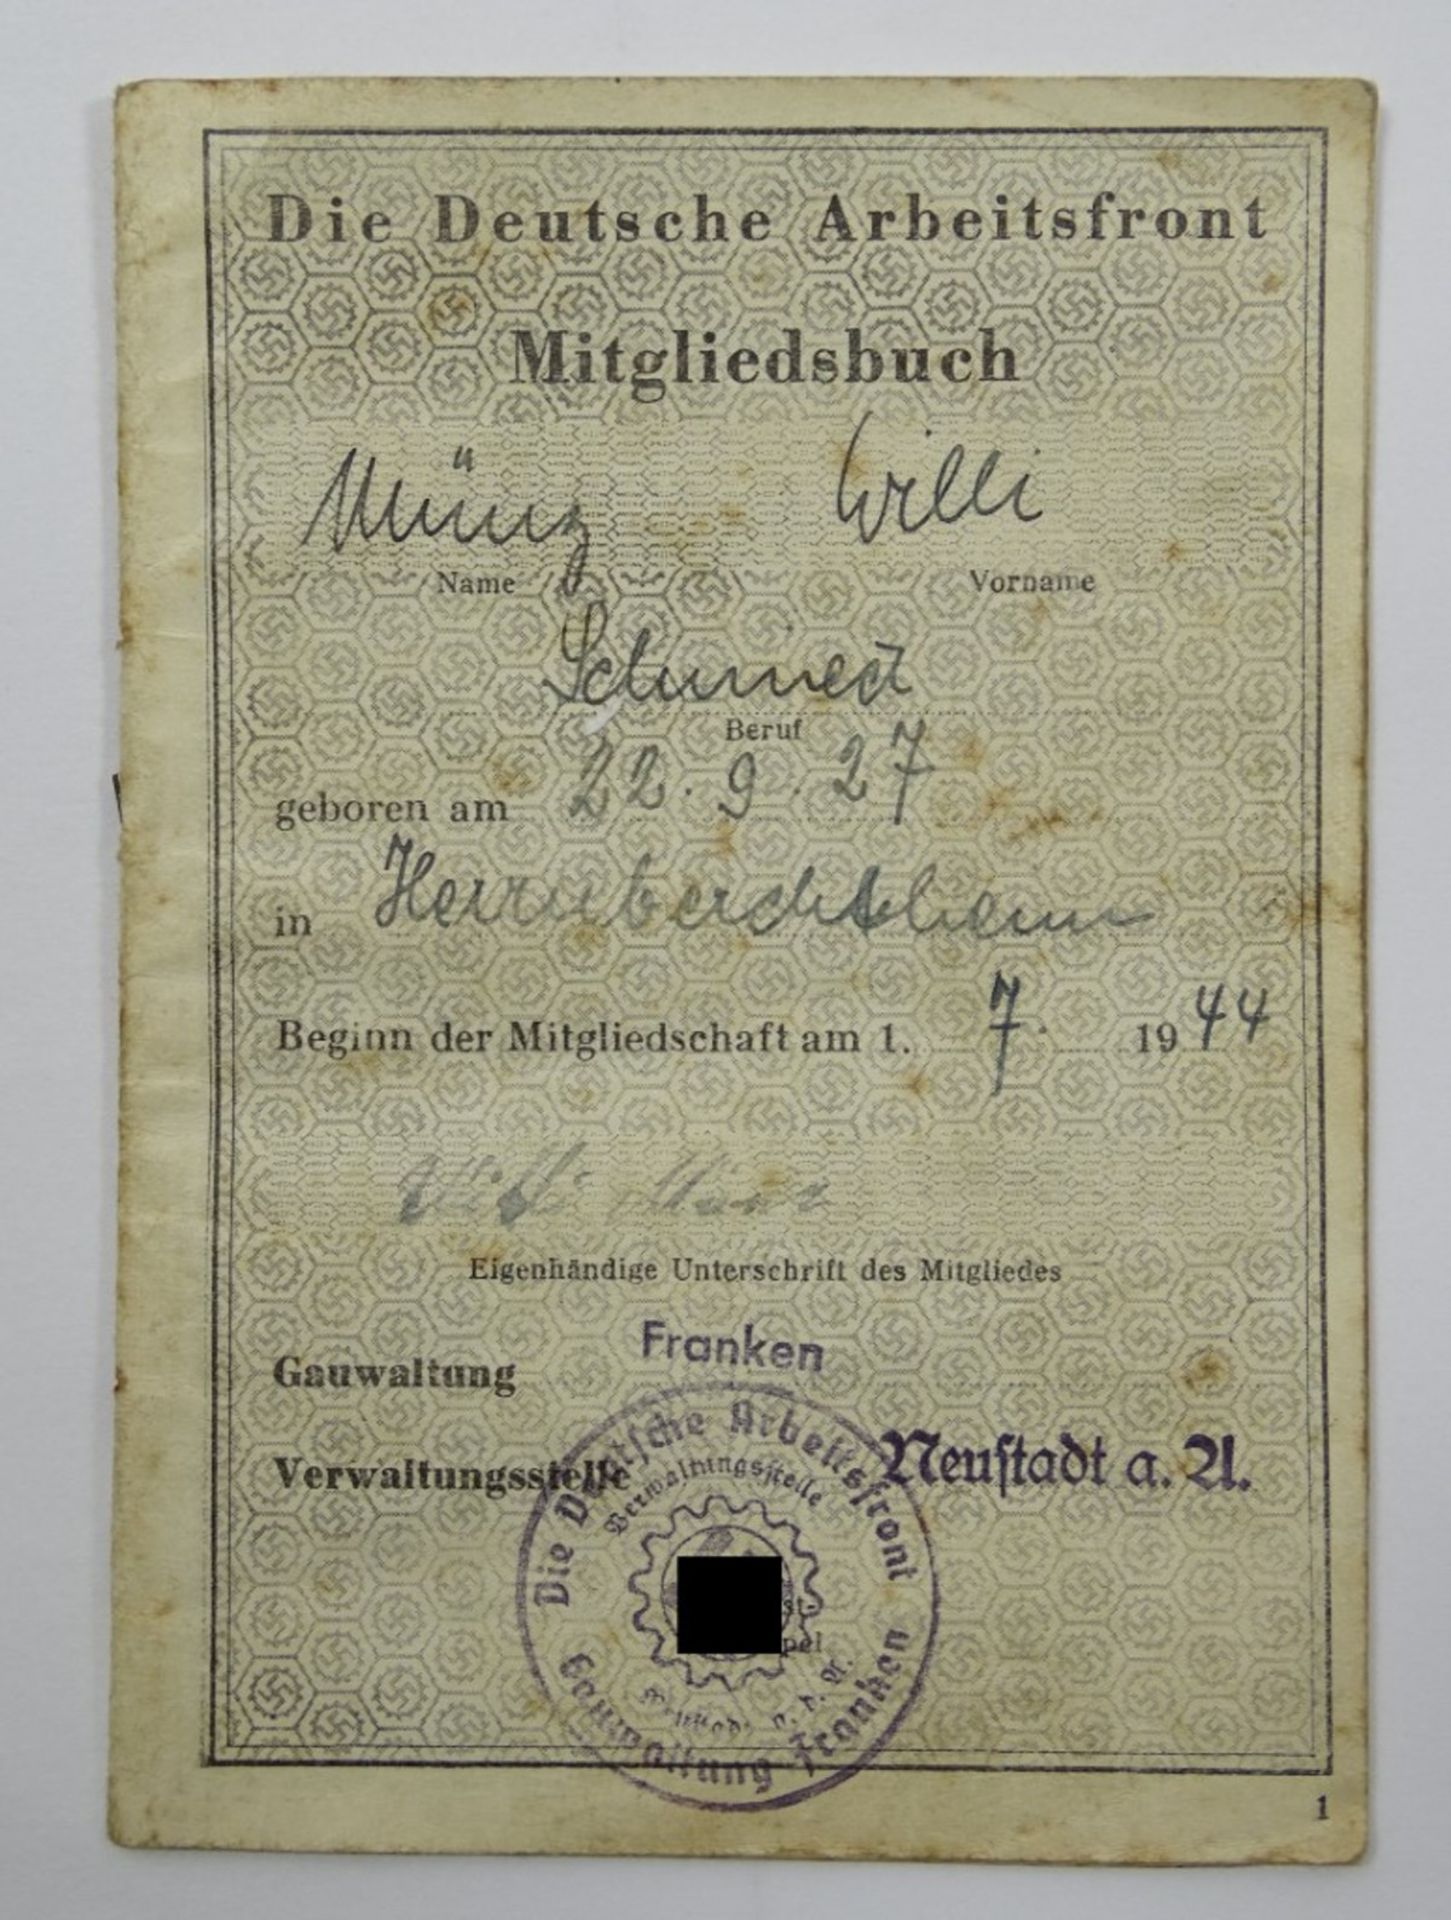 Mitgliedsbuch Deutsche Arbeitsfront, Karte und sowj. Dokument, 2. WK - Image 2 of 4